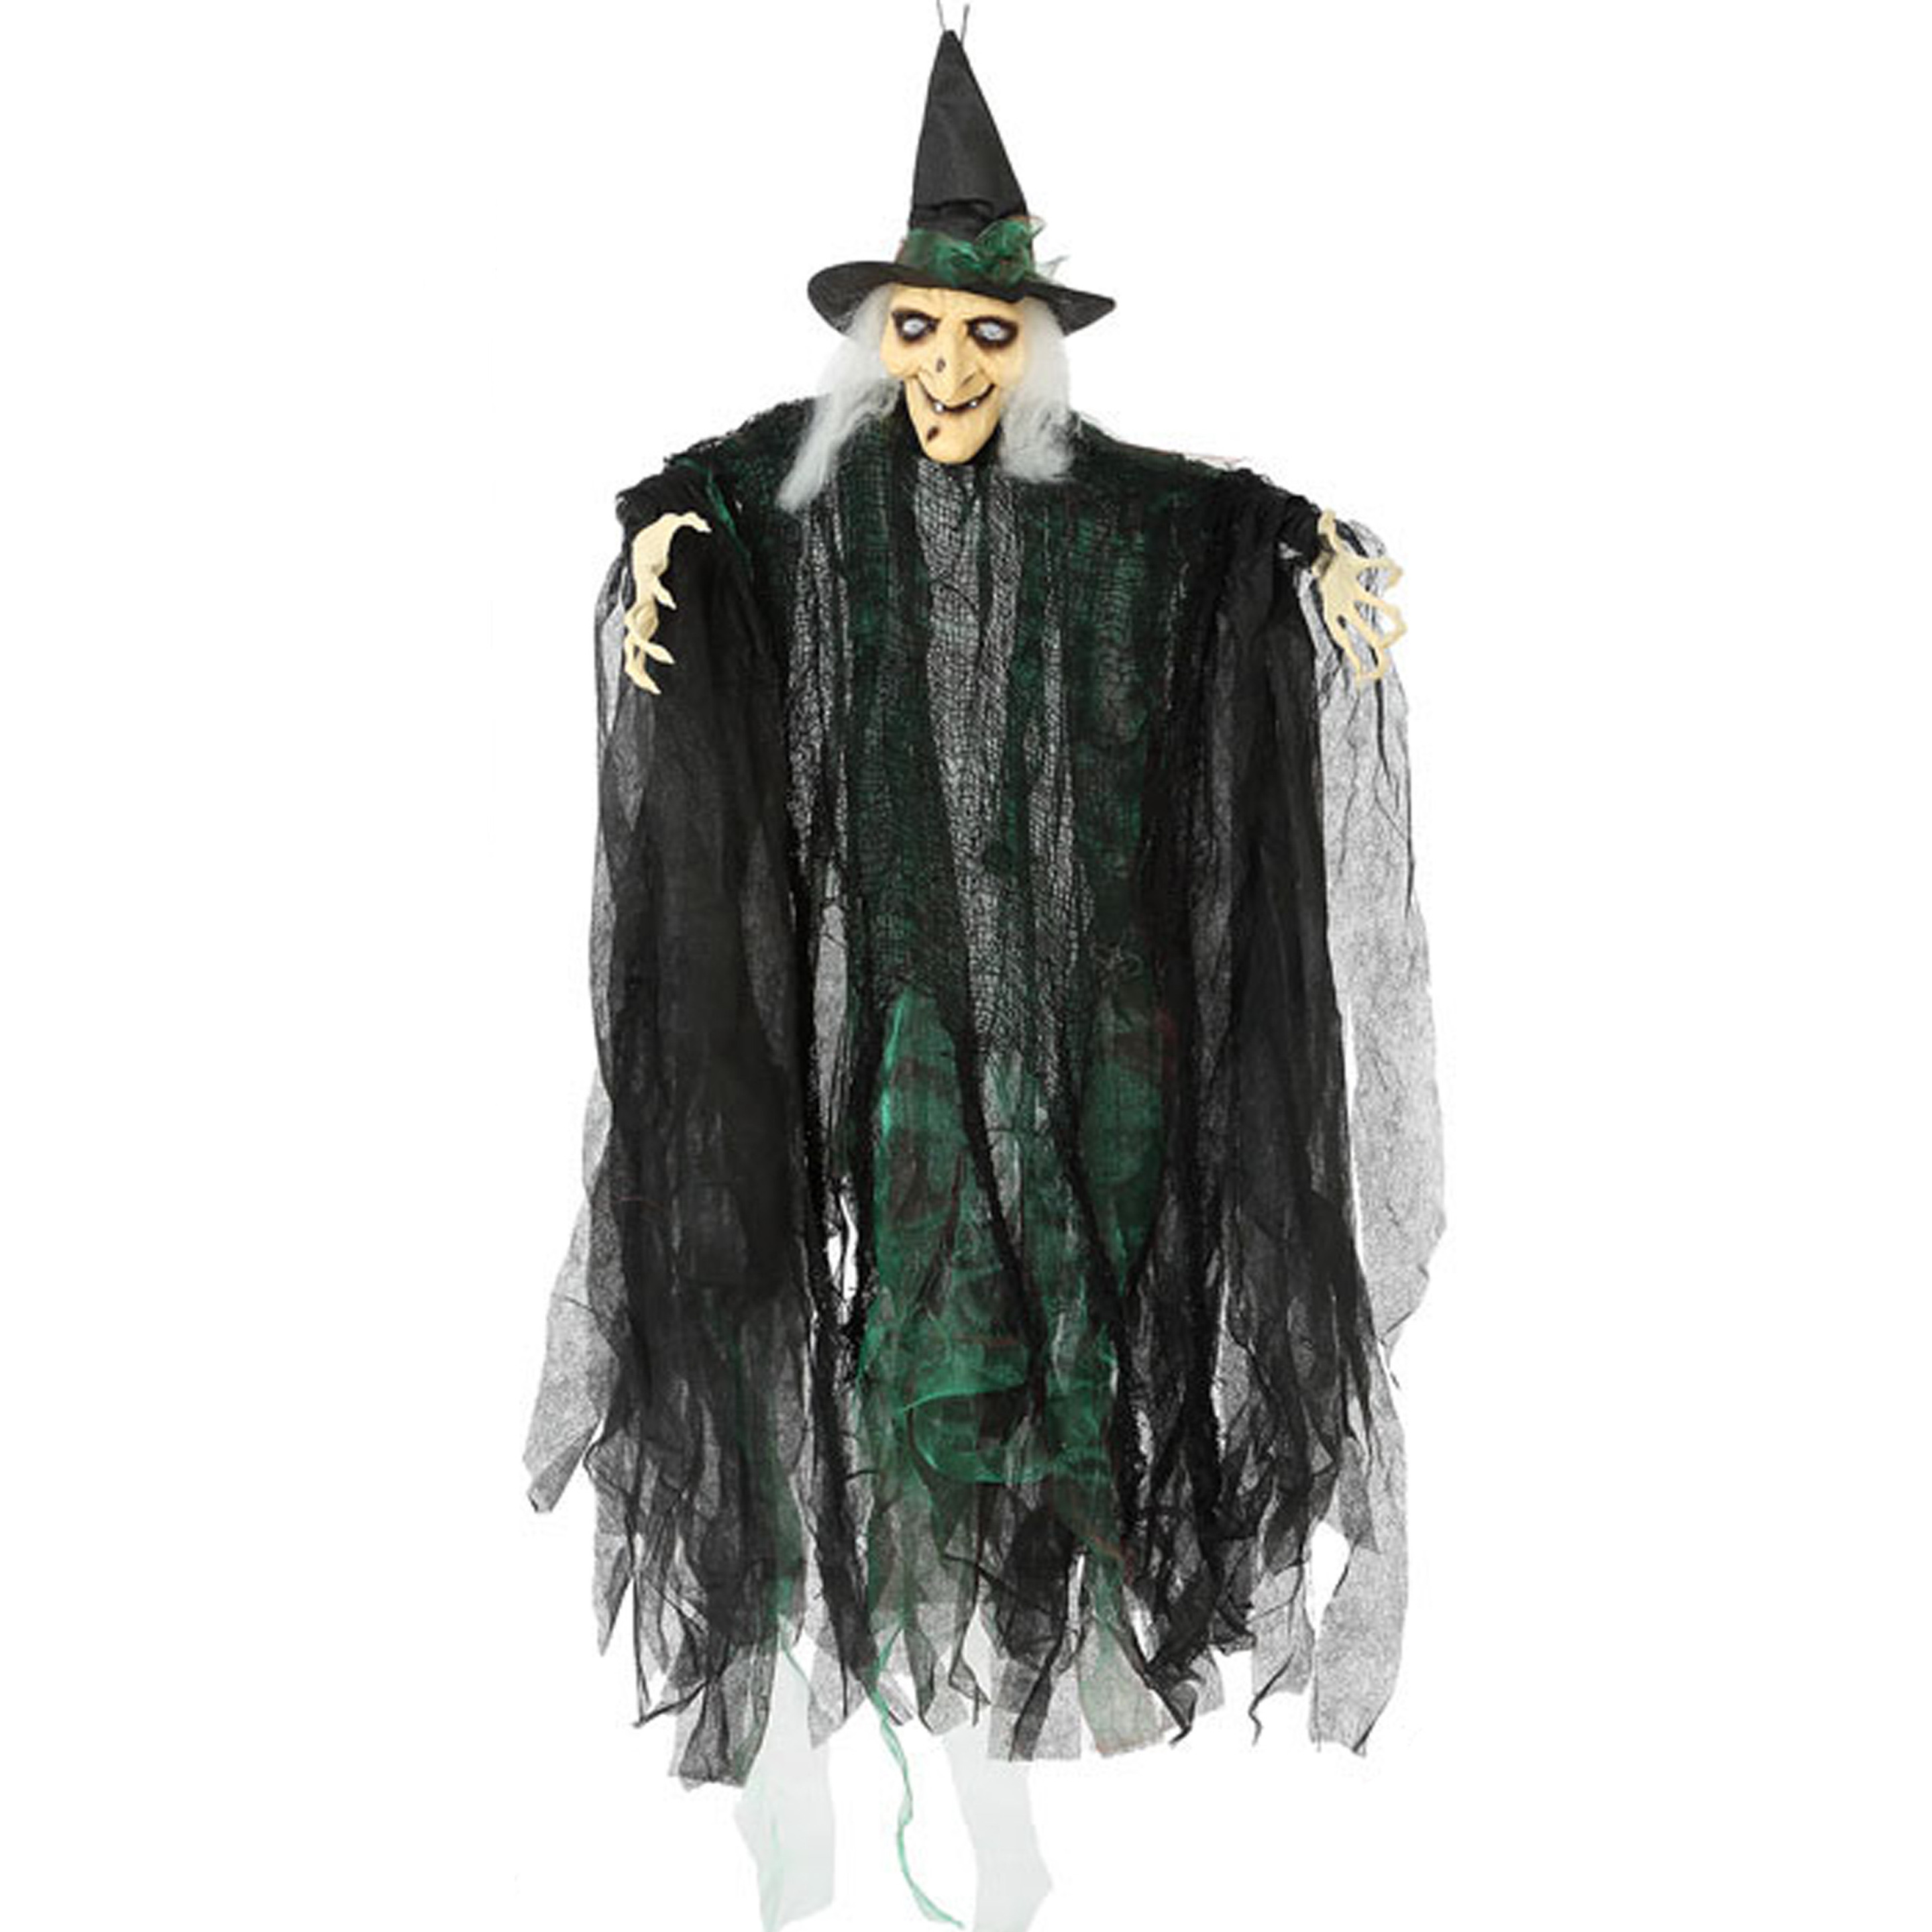 Halloween-horror thema hang decoratie heksen pop met LED licht enge-griezelige pop 110 cm